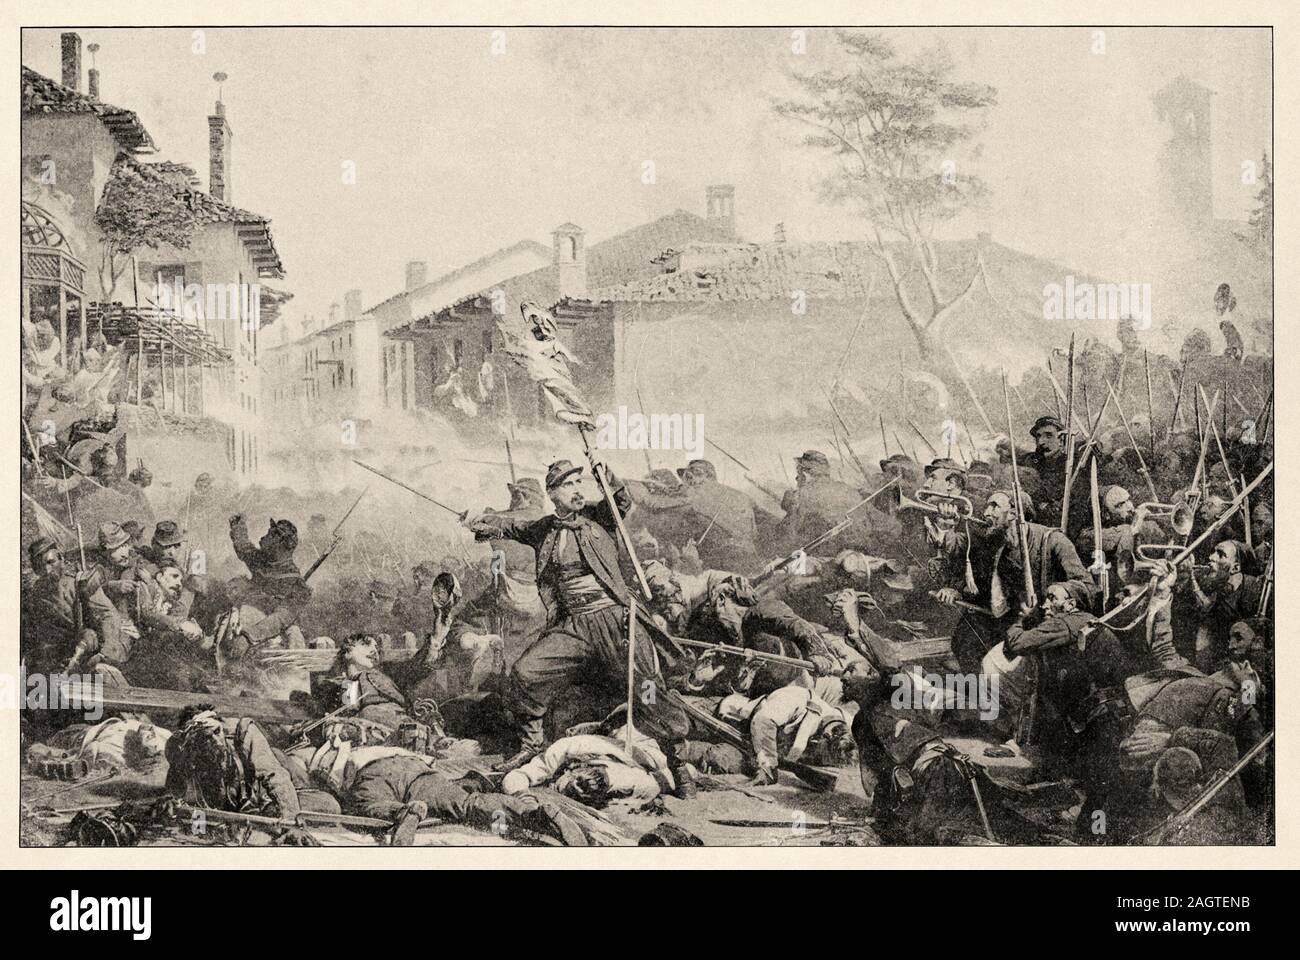 Der Krieg in Italien. Die Schlacht von Magenta wurde am 4. Juni 1859 während der zweiten italienischen Unabhängigkeitskrieg gekämpft, was zu einem French-Sardinian victo Stockfoto